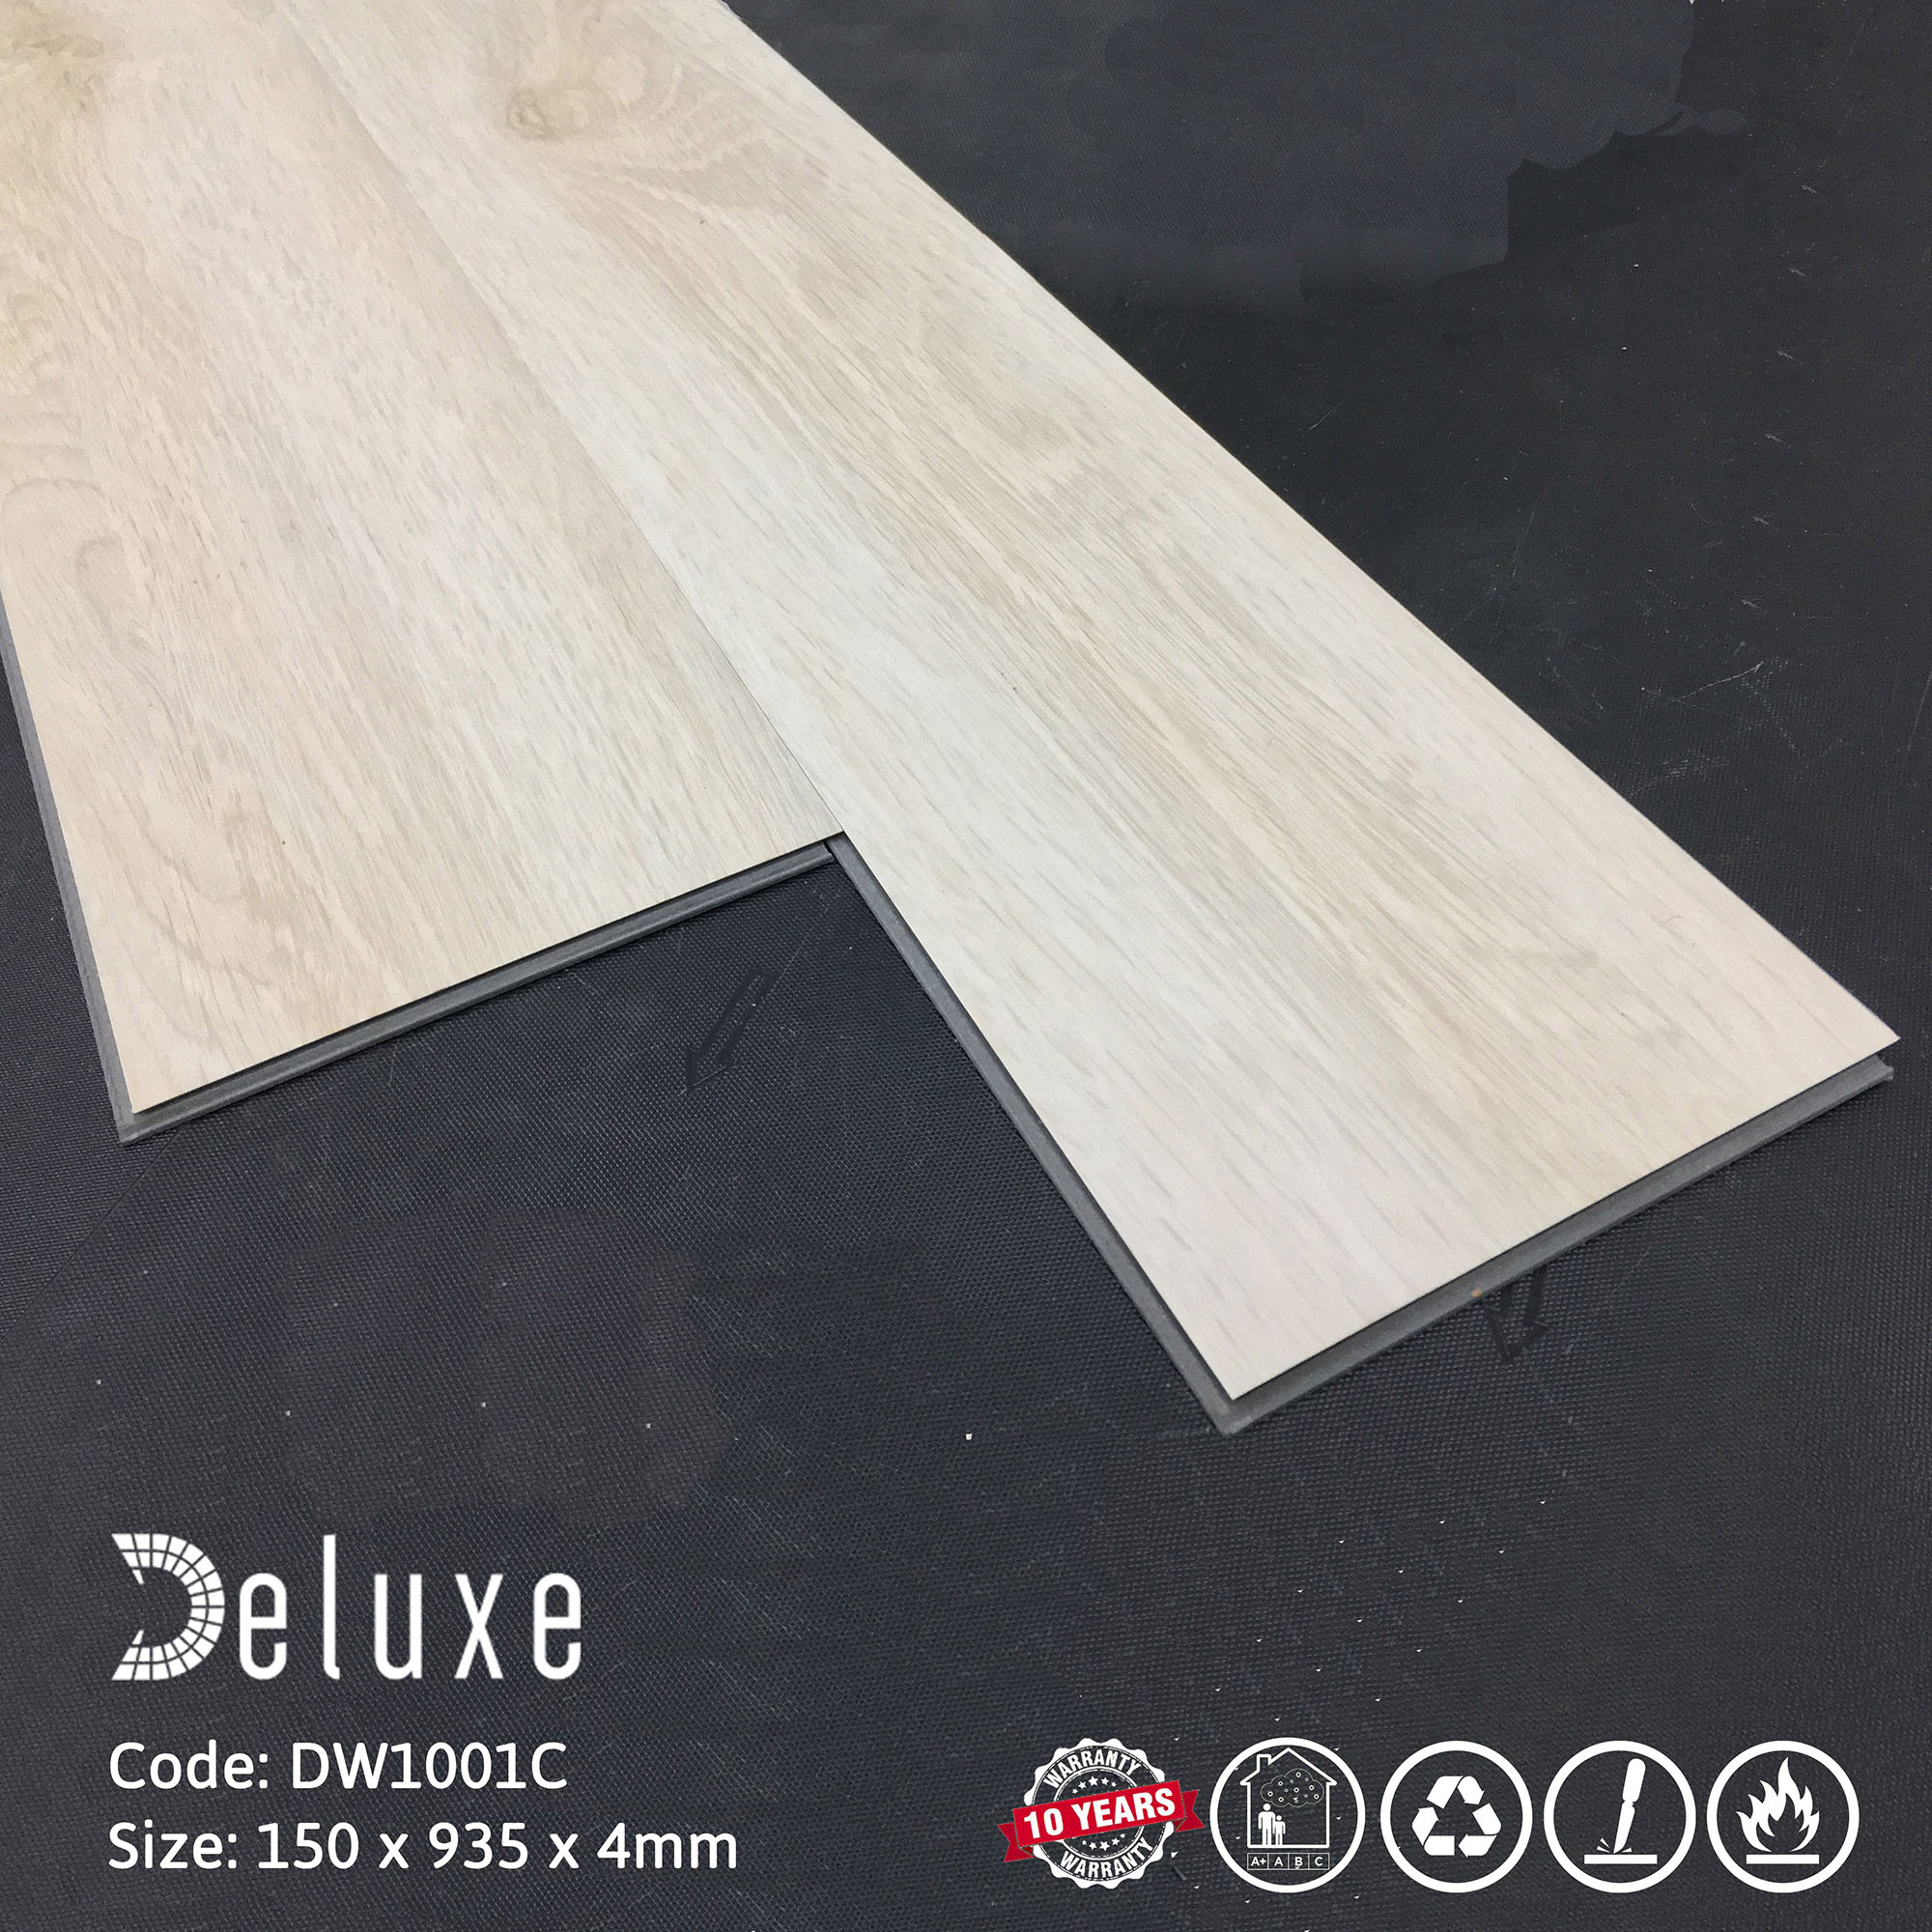 Sàn nhựa Deluxe Tile DW1001C hèm khóa màu trắng kết hợp vân gỗ Sồi